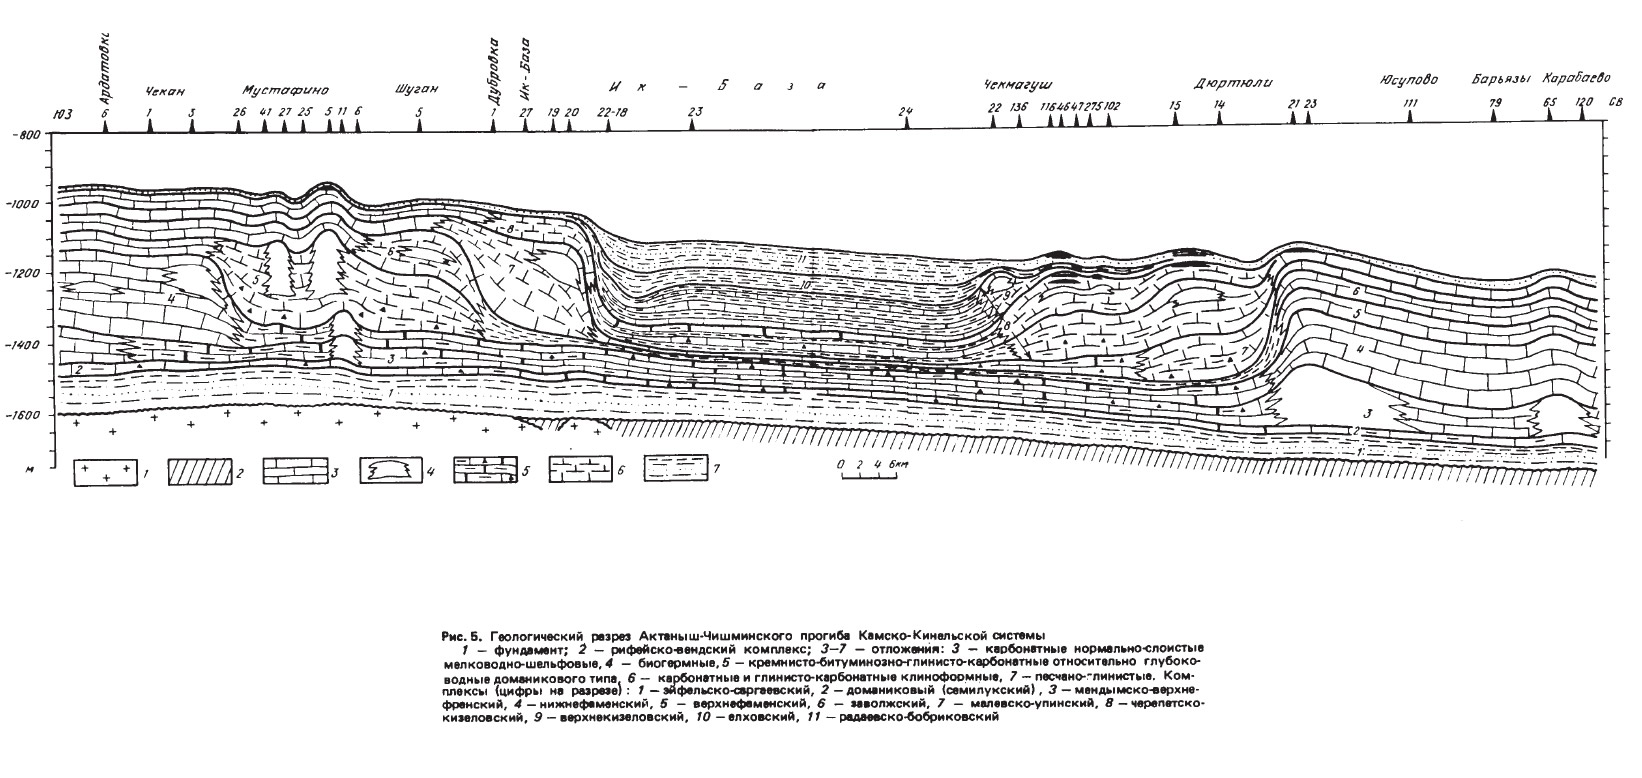 Рис. 5. Геологический разрез Актаныш-Чишминского прогиба Камско-Кинальской системы